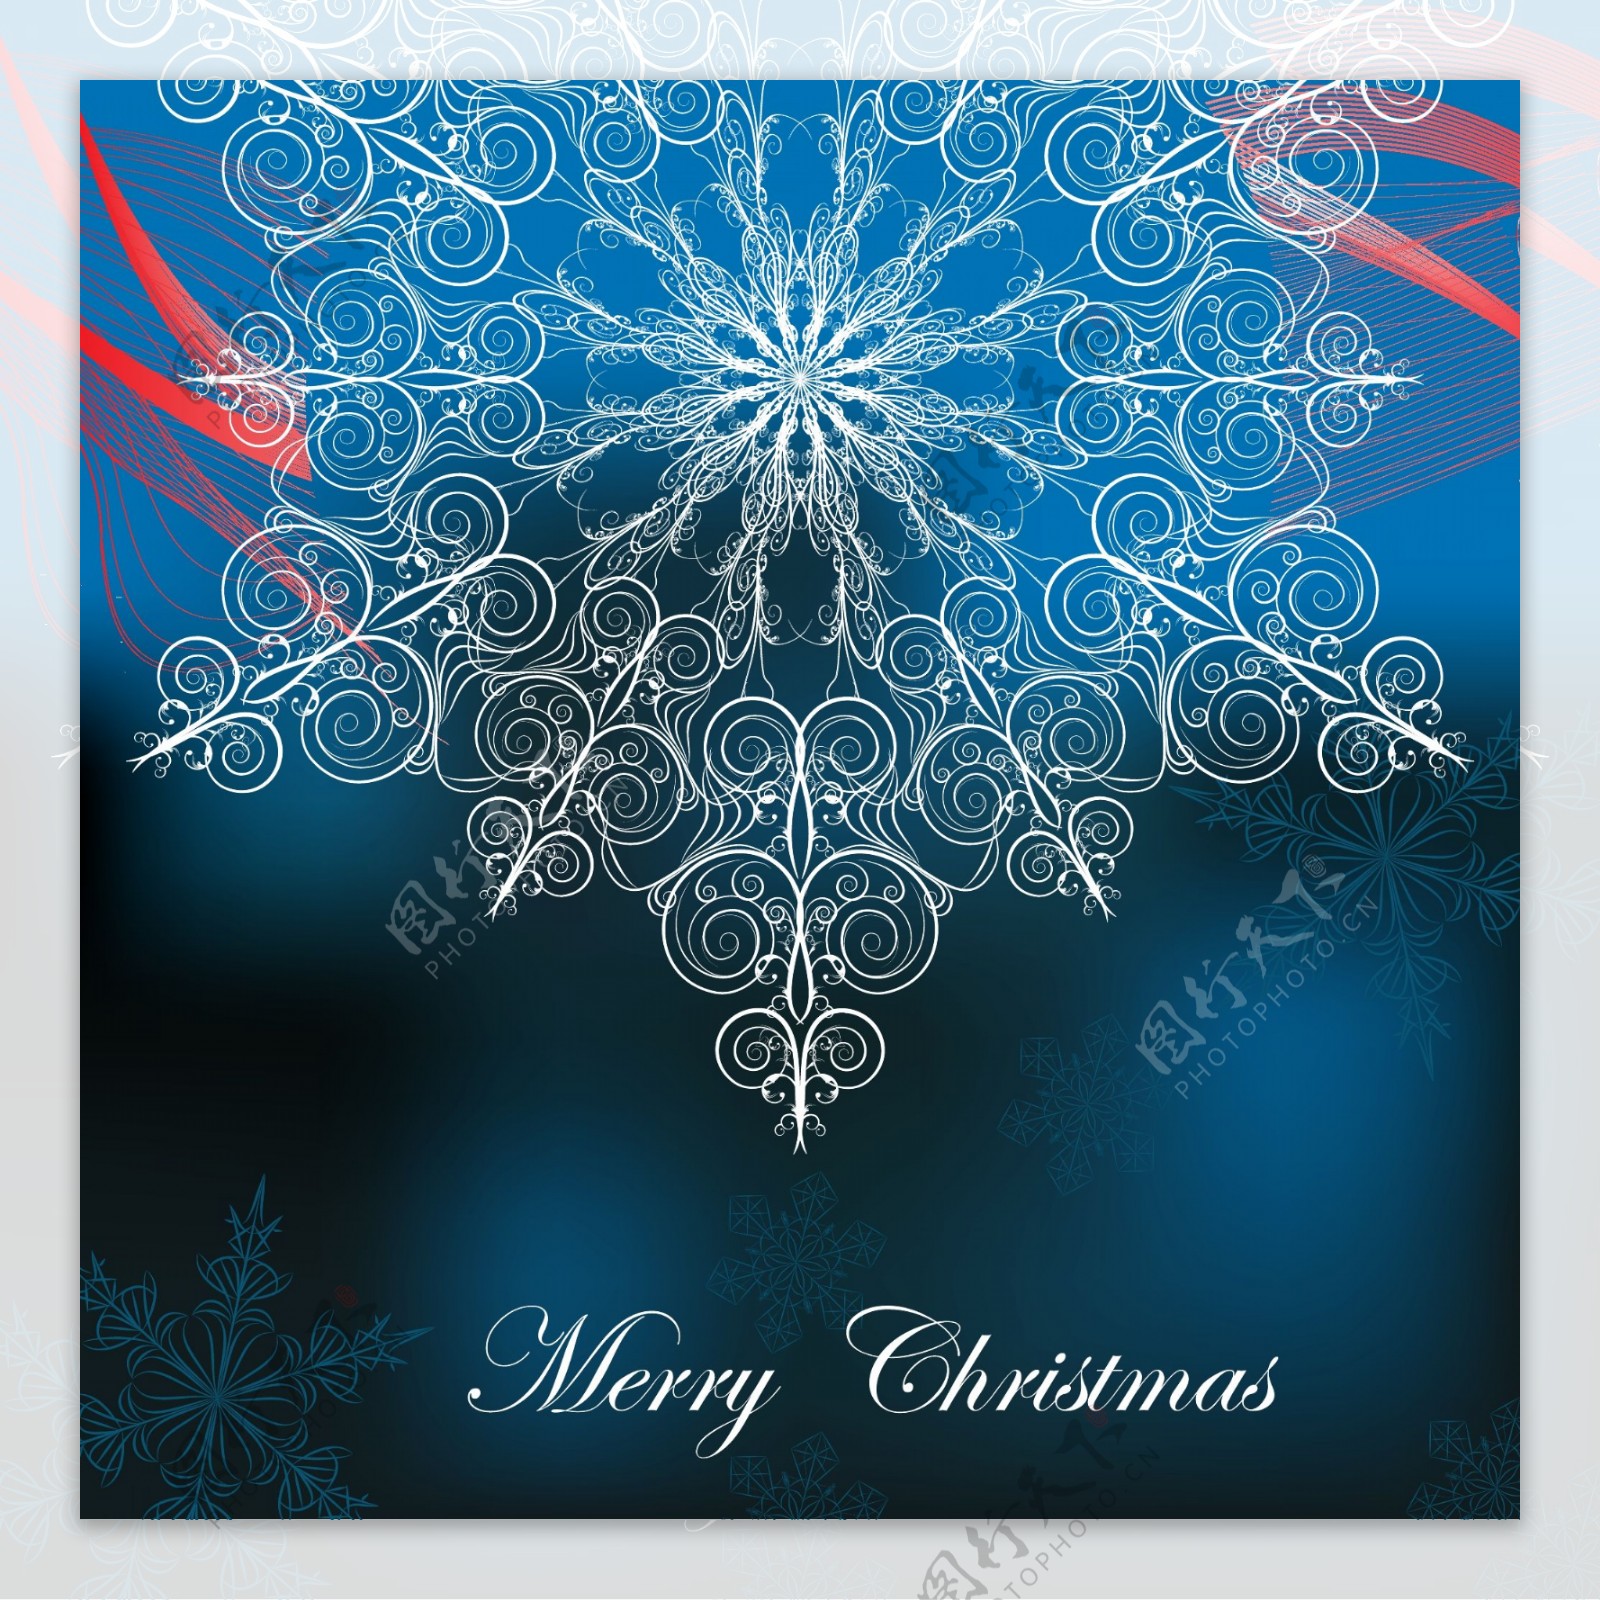 圣诞节雪花蓝色背景矢量素材